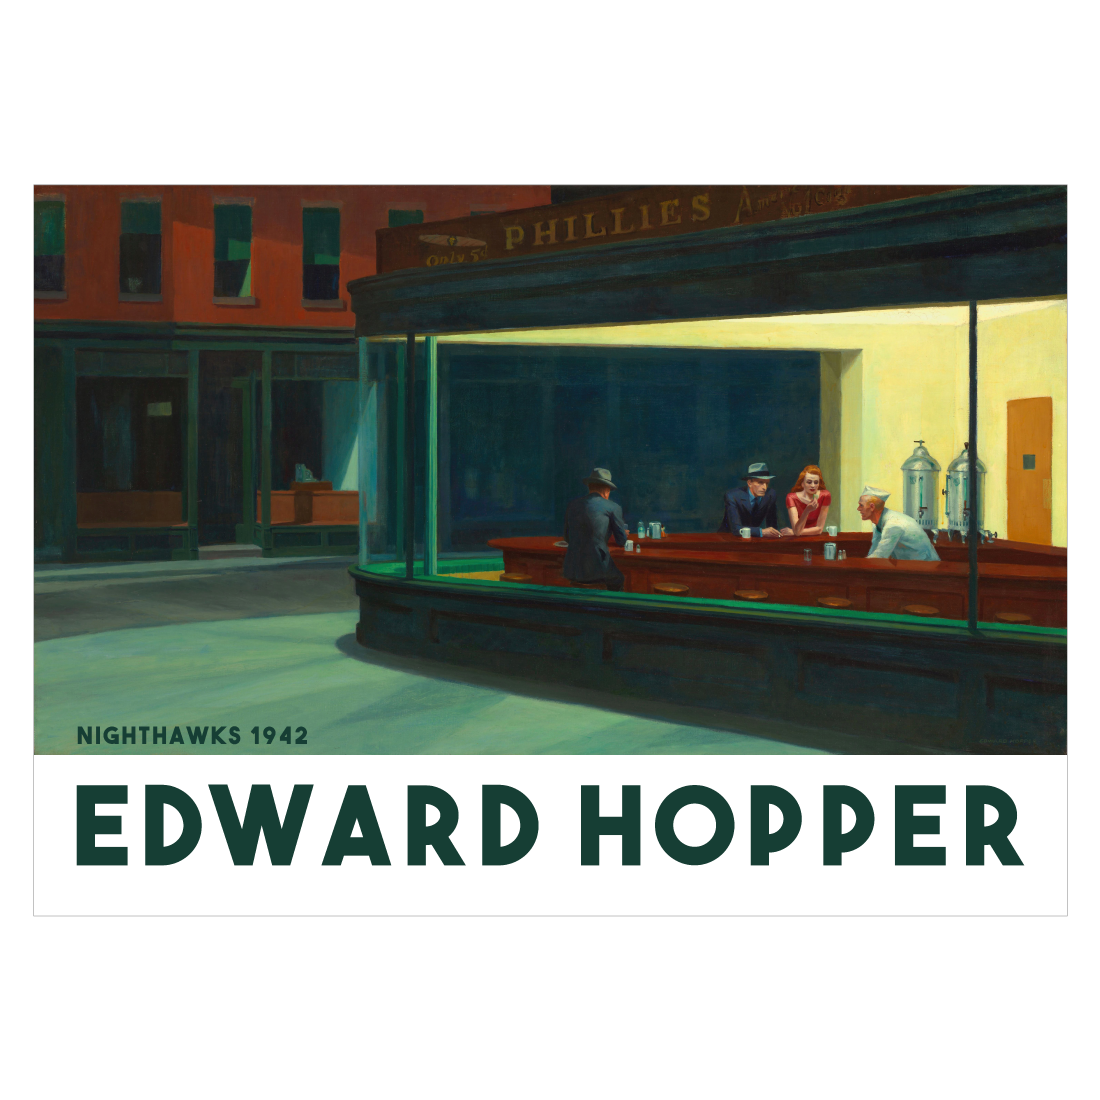 Edward Hopper "Nighthawks"